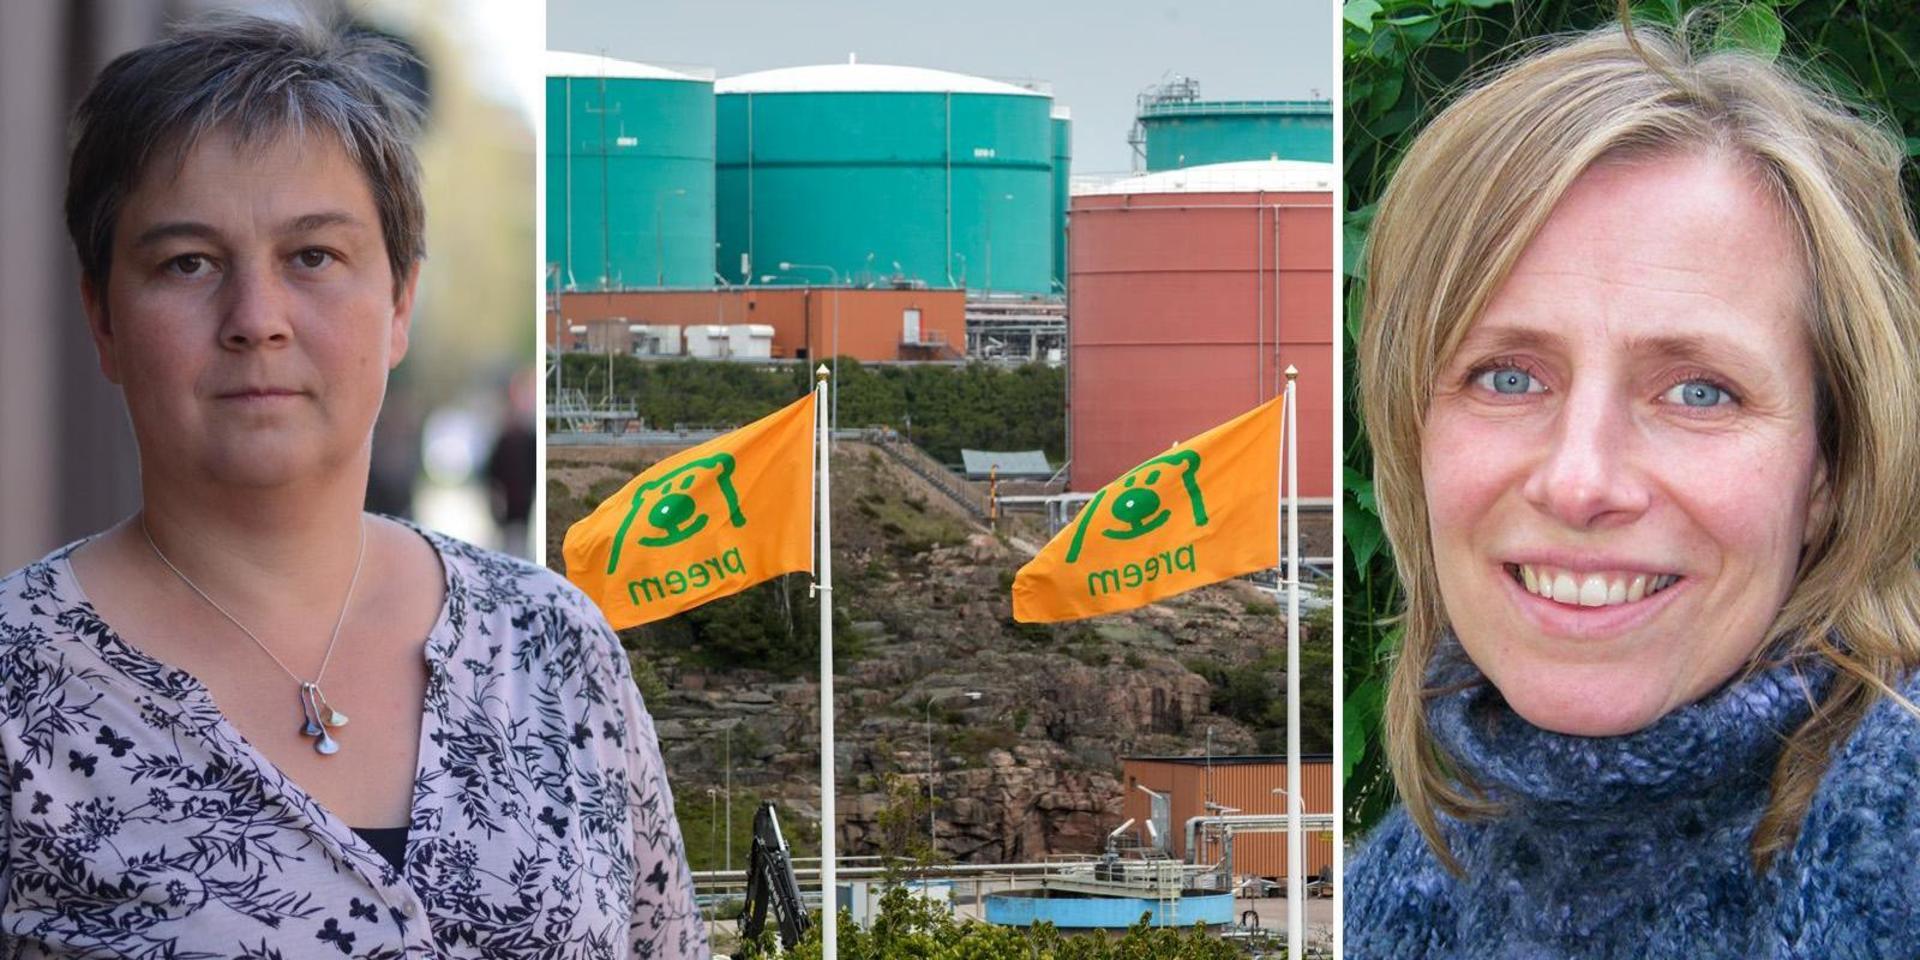 Att säga ja till Preemraffs utbyggnad går helt stick i stäv med regeringens ambition att göra Sverige till världens första fossilfria välfärdsland, skriver Emma Nohrén och Maria Granberg från Miljöpartiet.